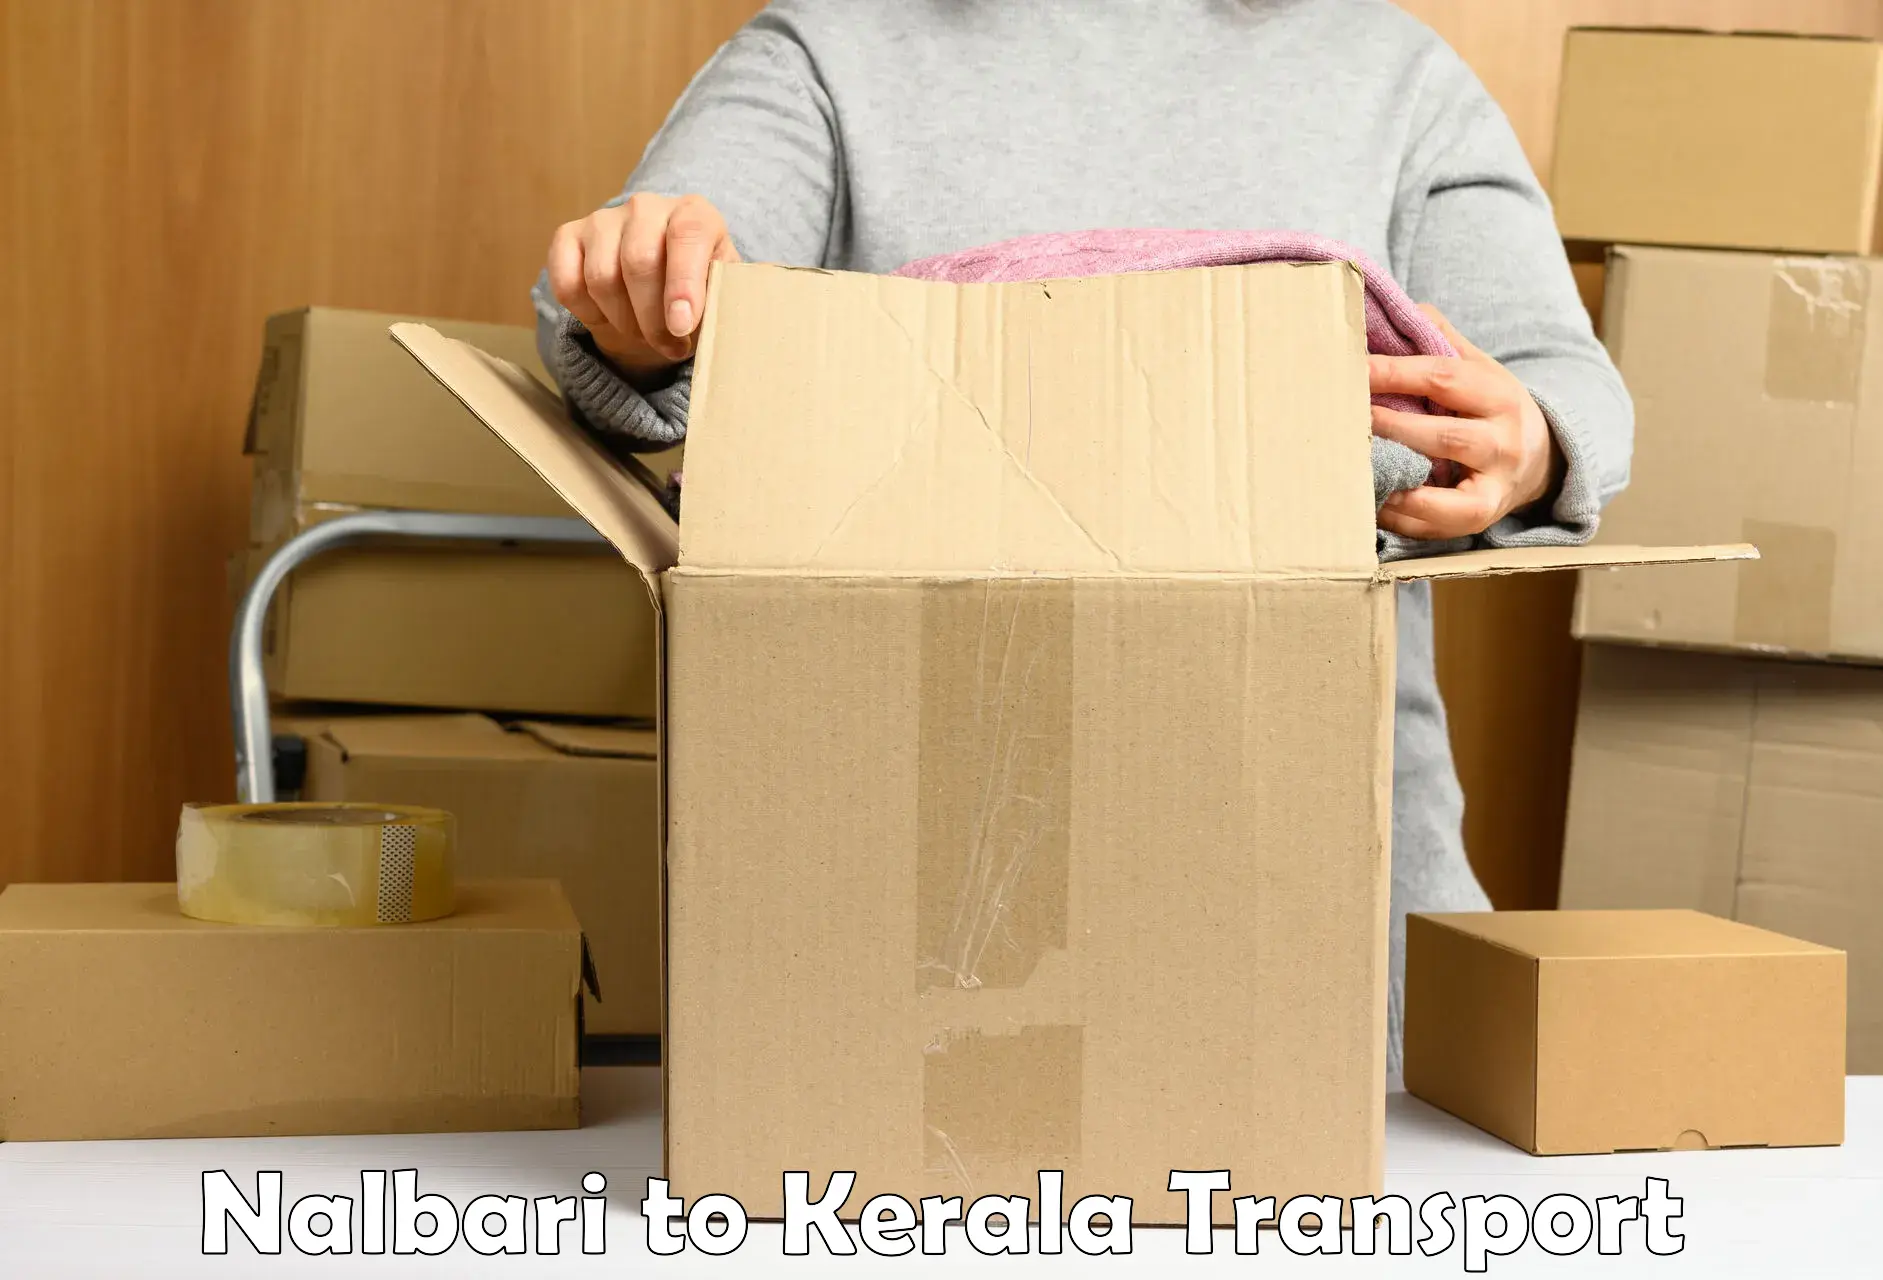 Road transport online services Nalbari to Thiruvananthapuram